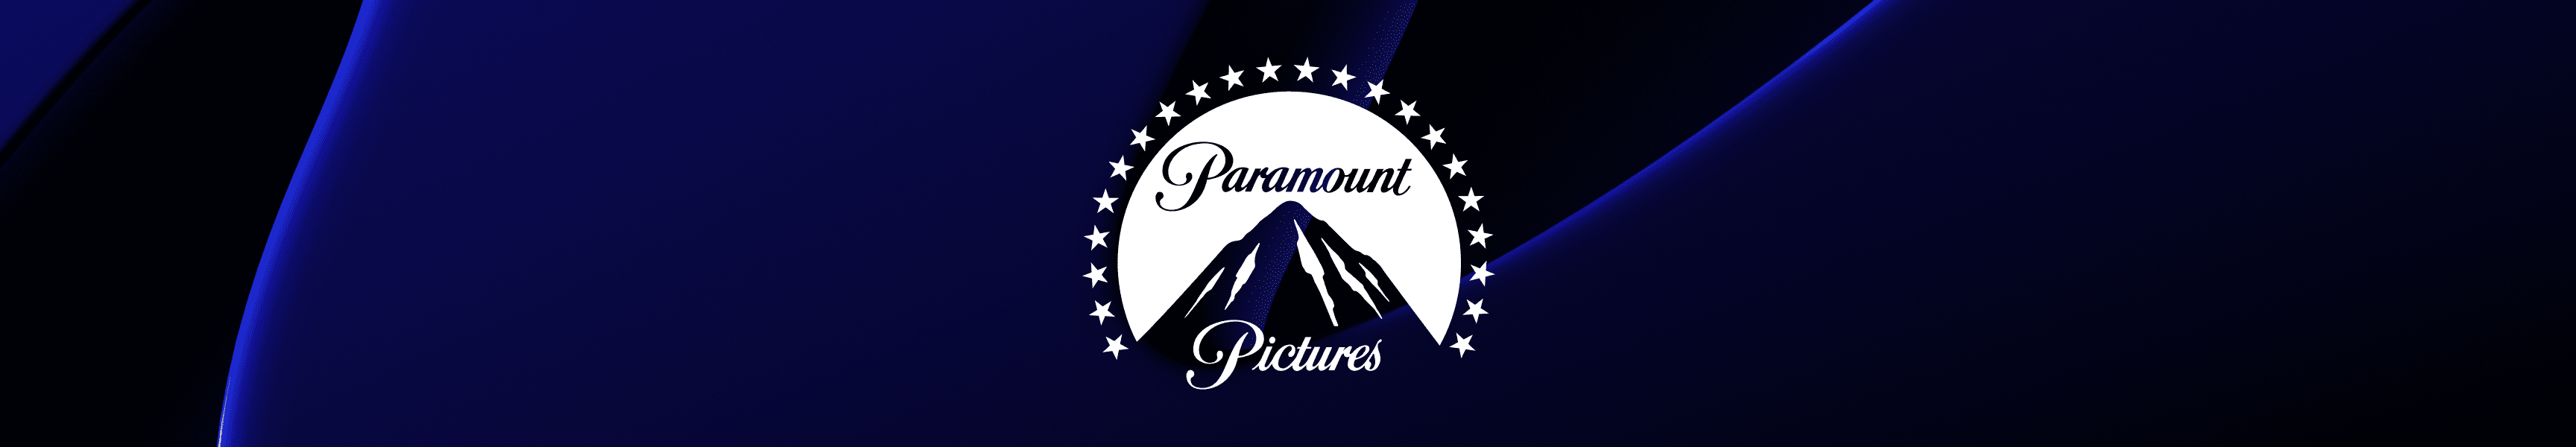 Paramount Pictures Chapeaux